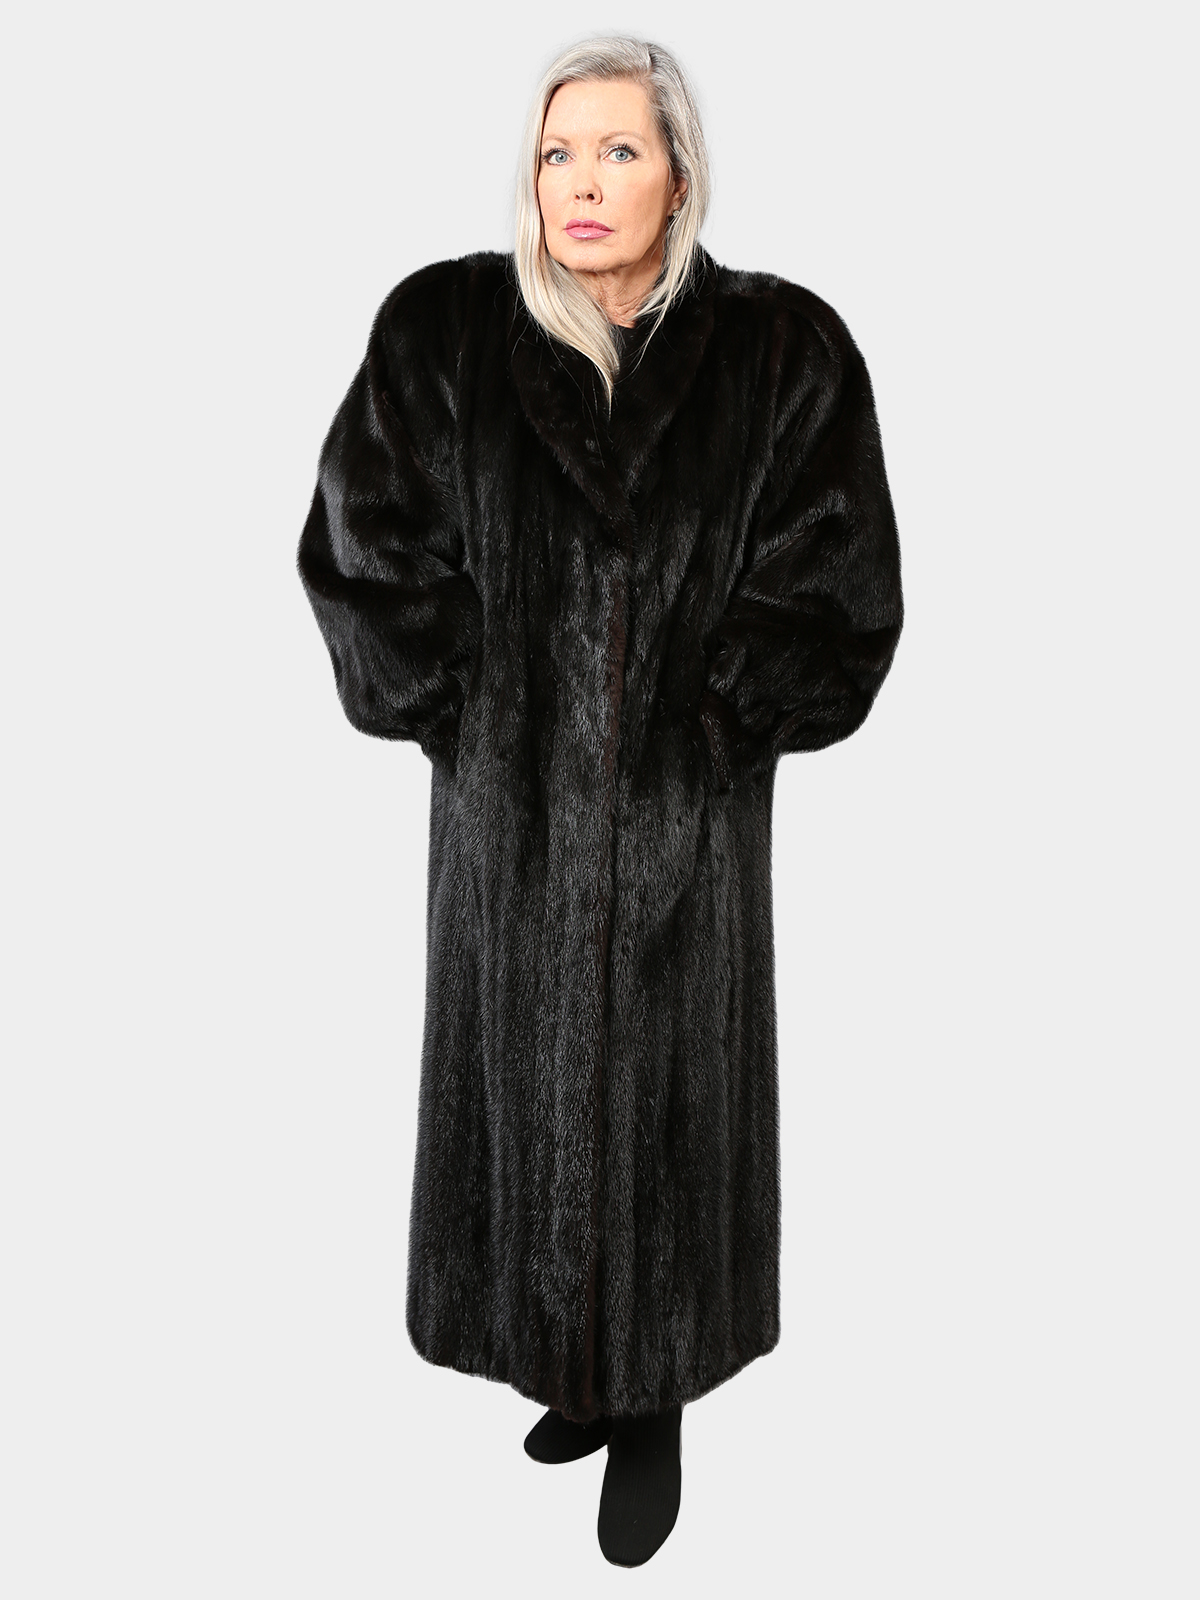 Ranch Mink Fur Coat - Women's Fur Coat - Estate Furs